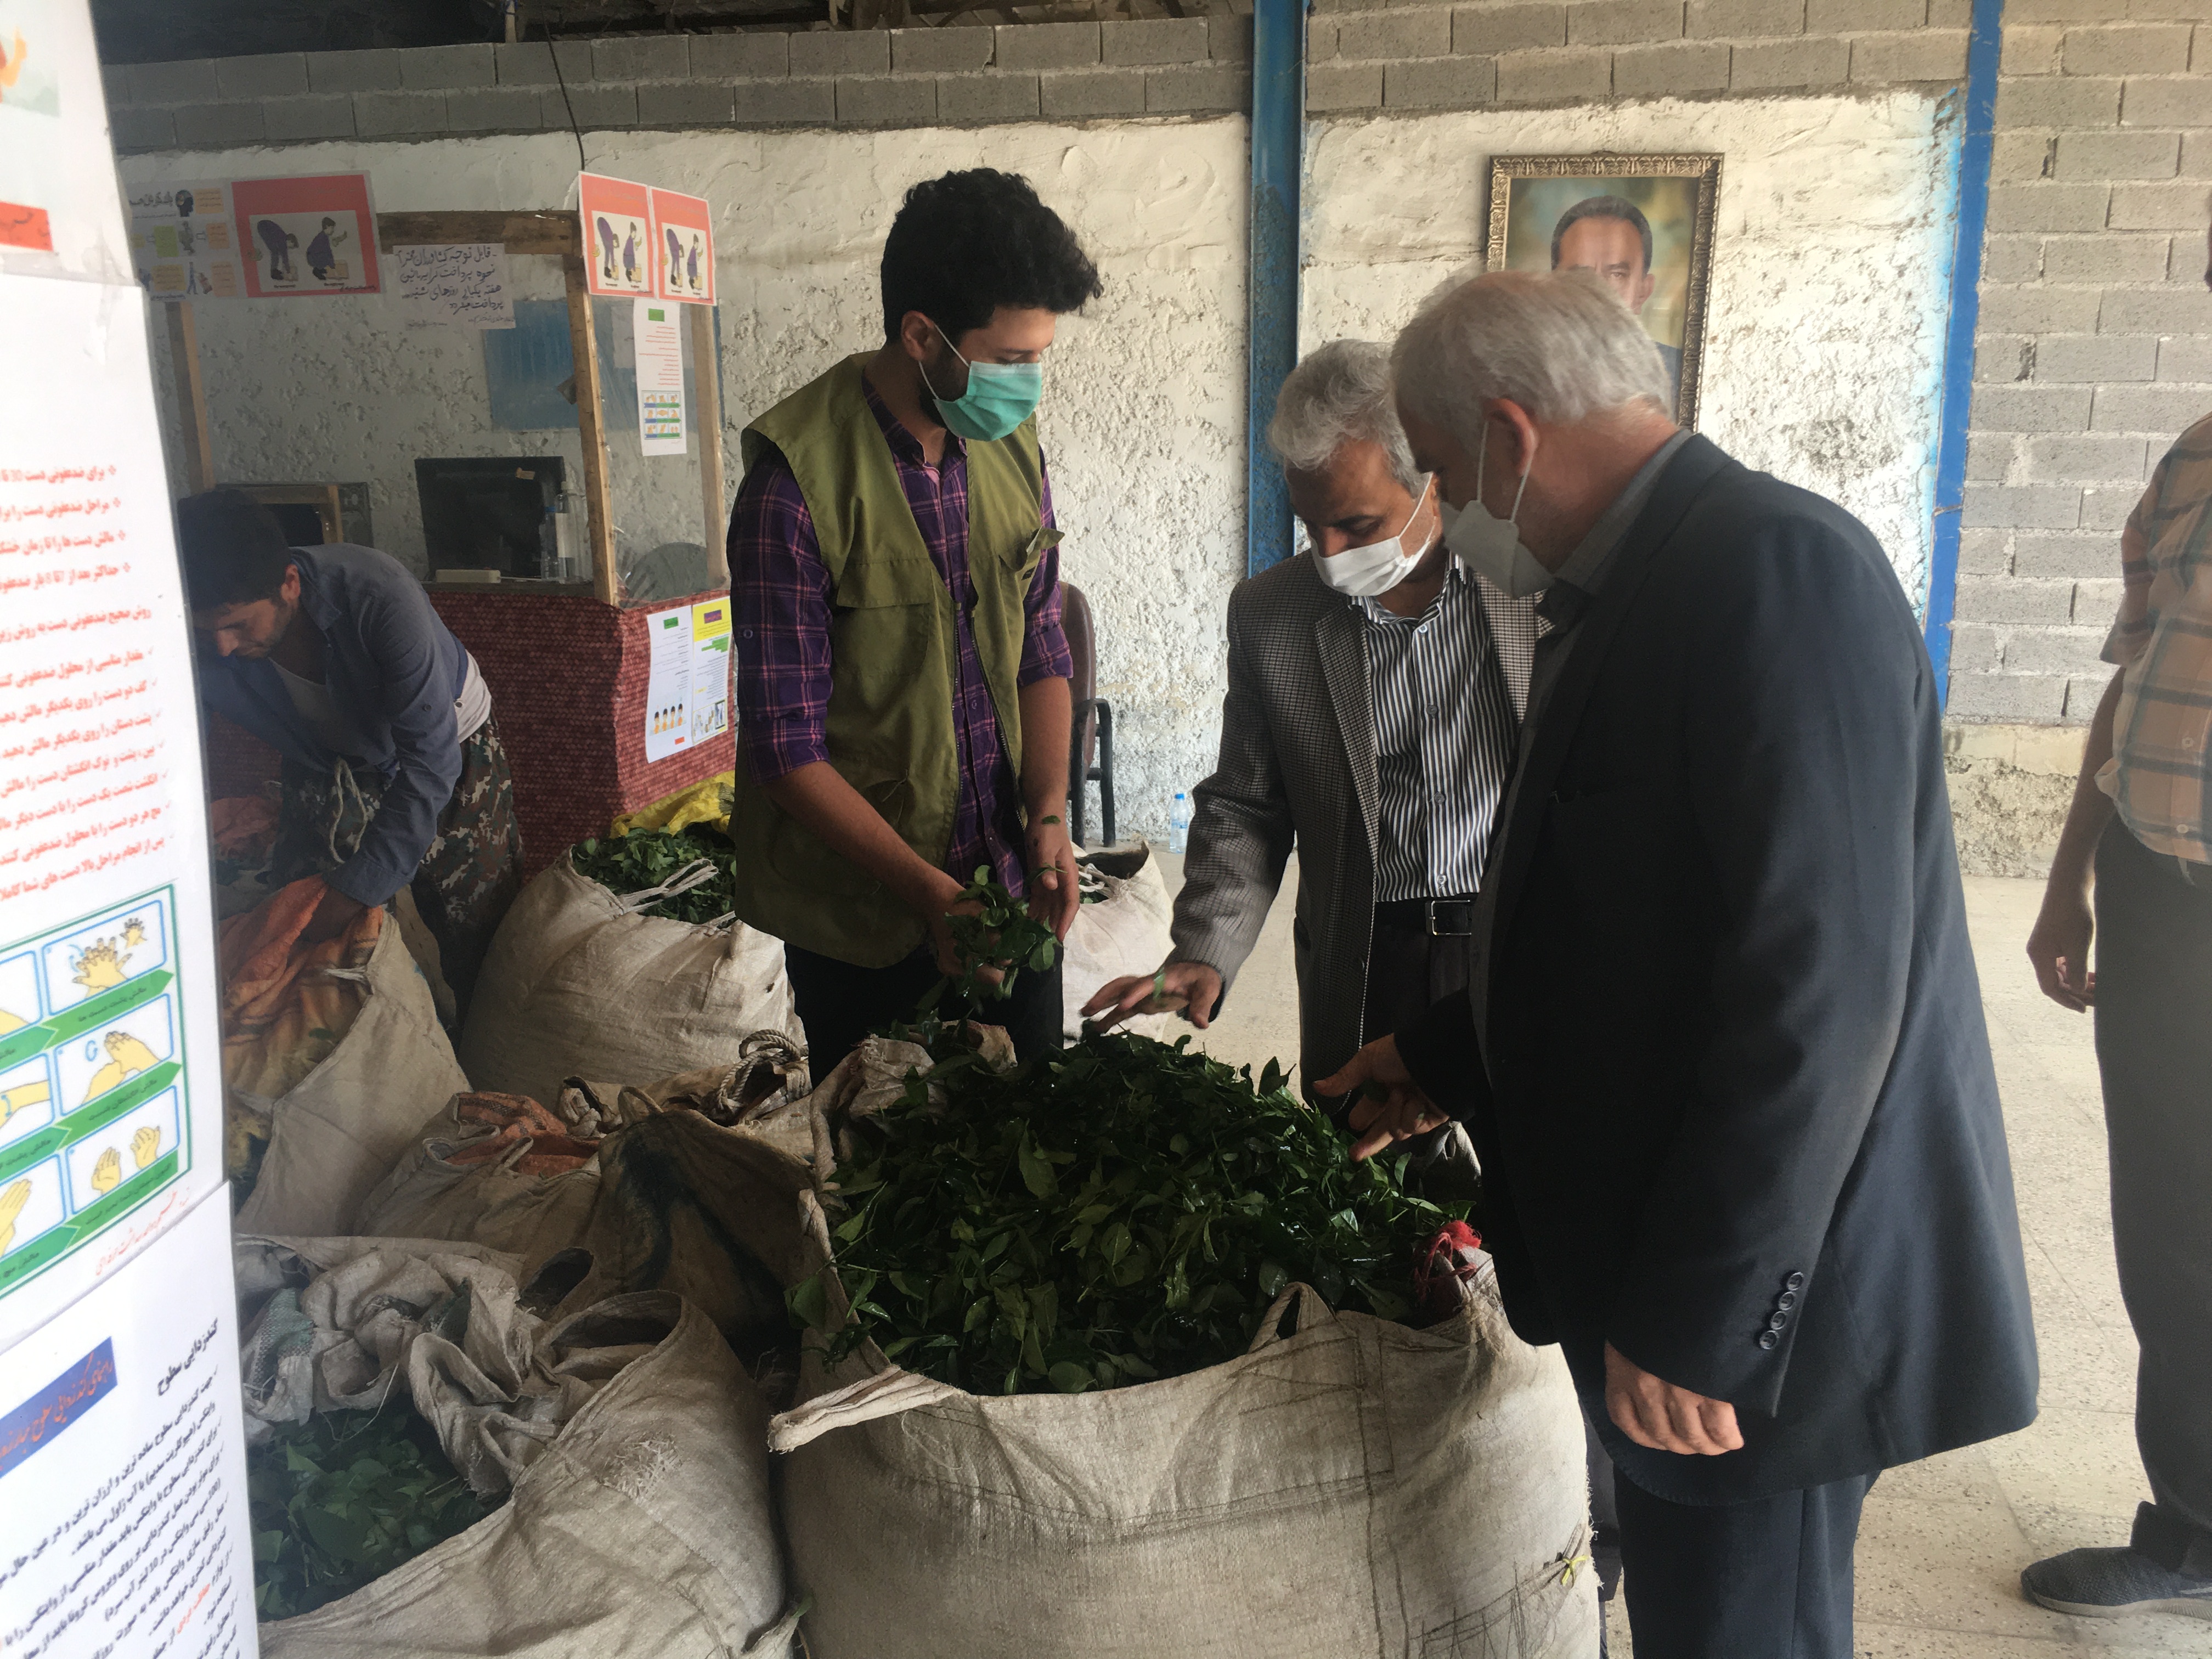 بازدید رئیس سازمان چای کشور با شروع چین سوم (تابستانه) برگ سبز چای از کارخانجات شهرستان لاهیجان